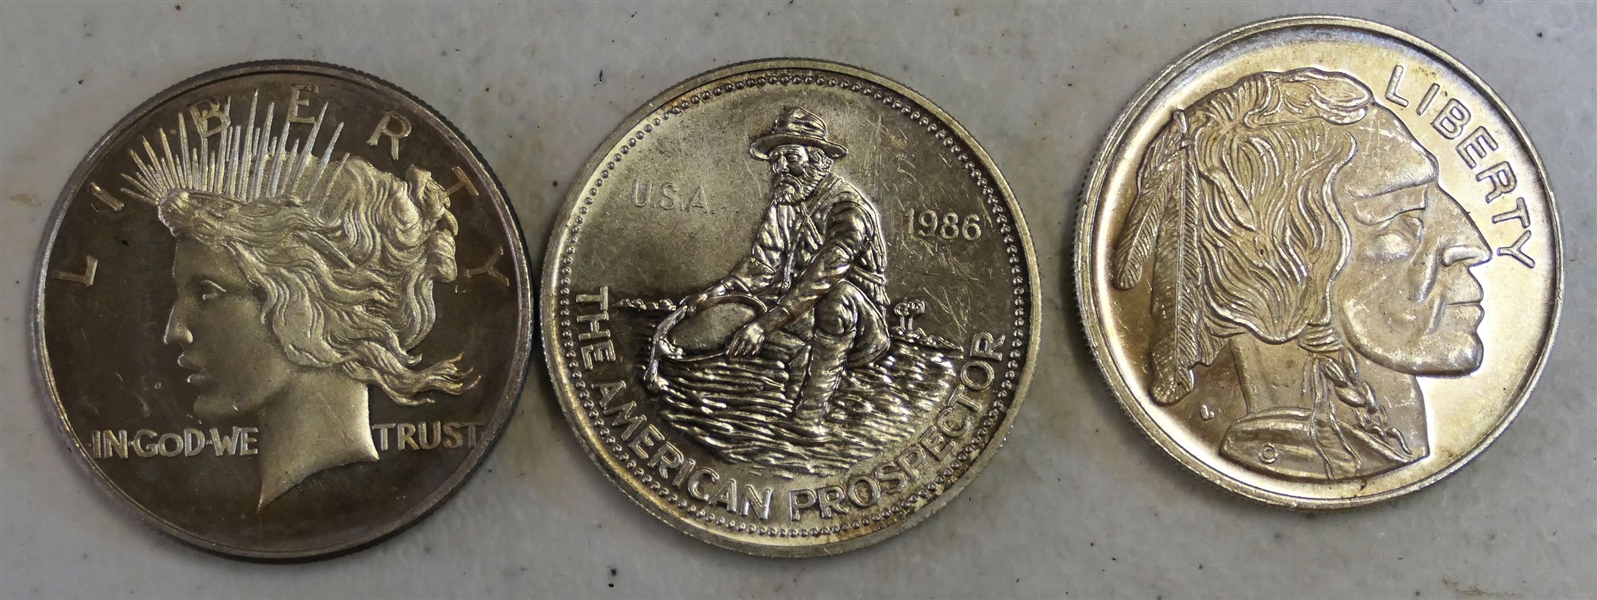 3 - 1 Ounce .999 Silver Coins - American Prospector, Peace Dollar Replica, and Buffalo Nickle Replica 